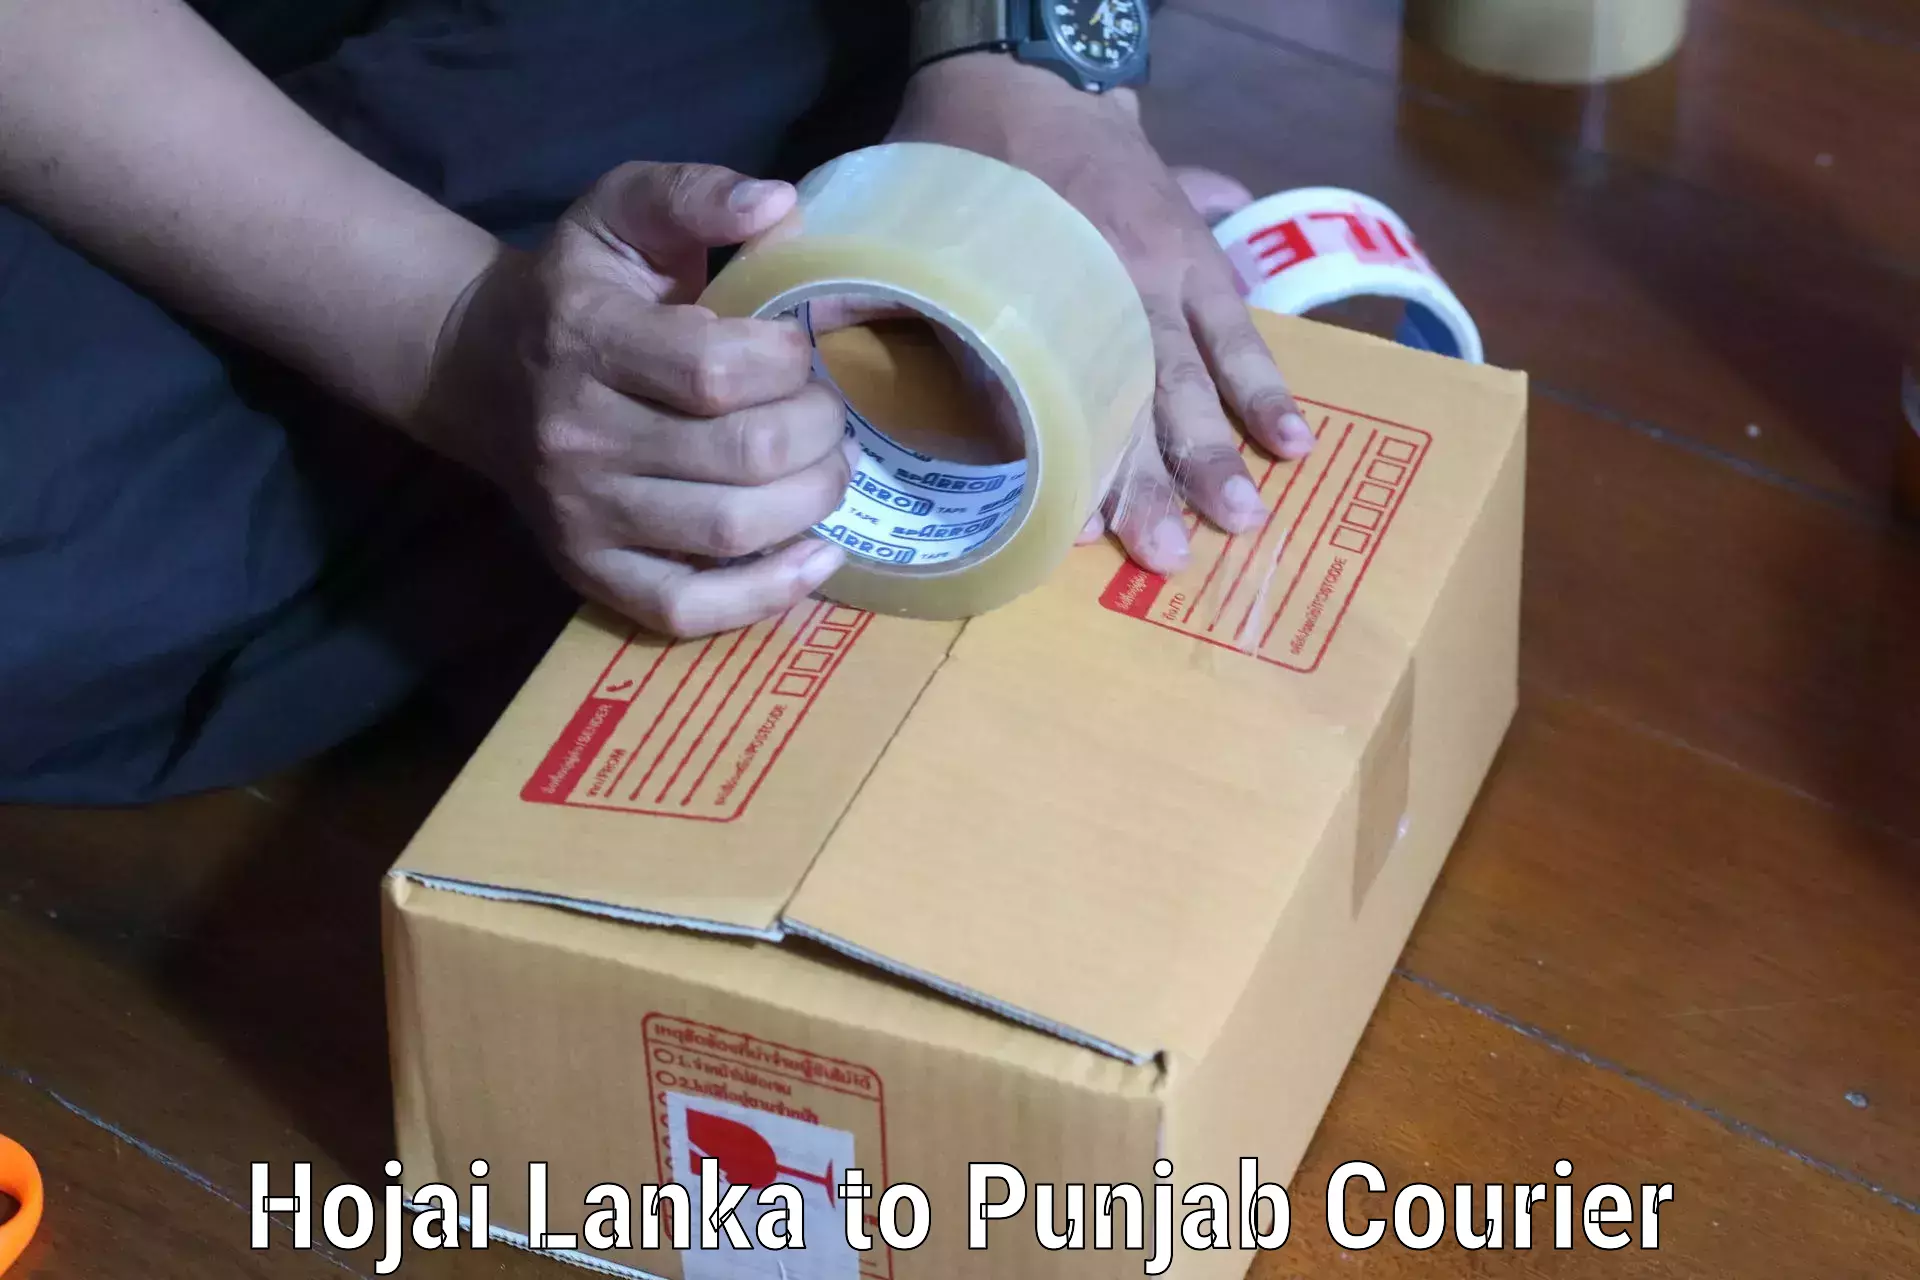 E-commerce shipping Hojai Lanka to Central University of Punjab Bathinda